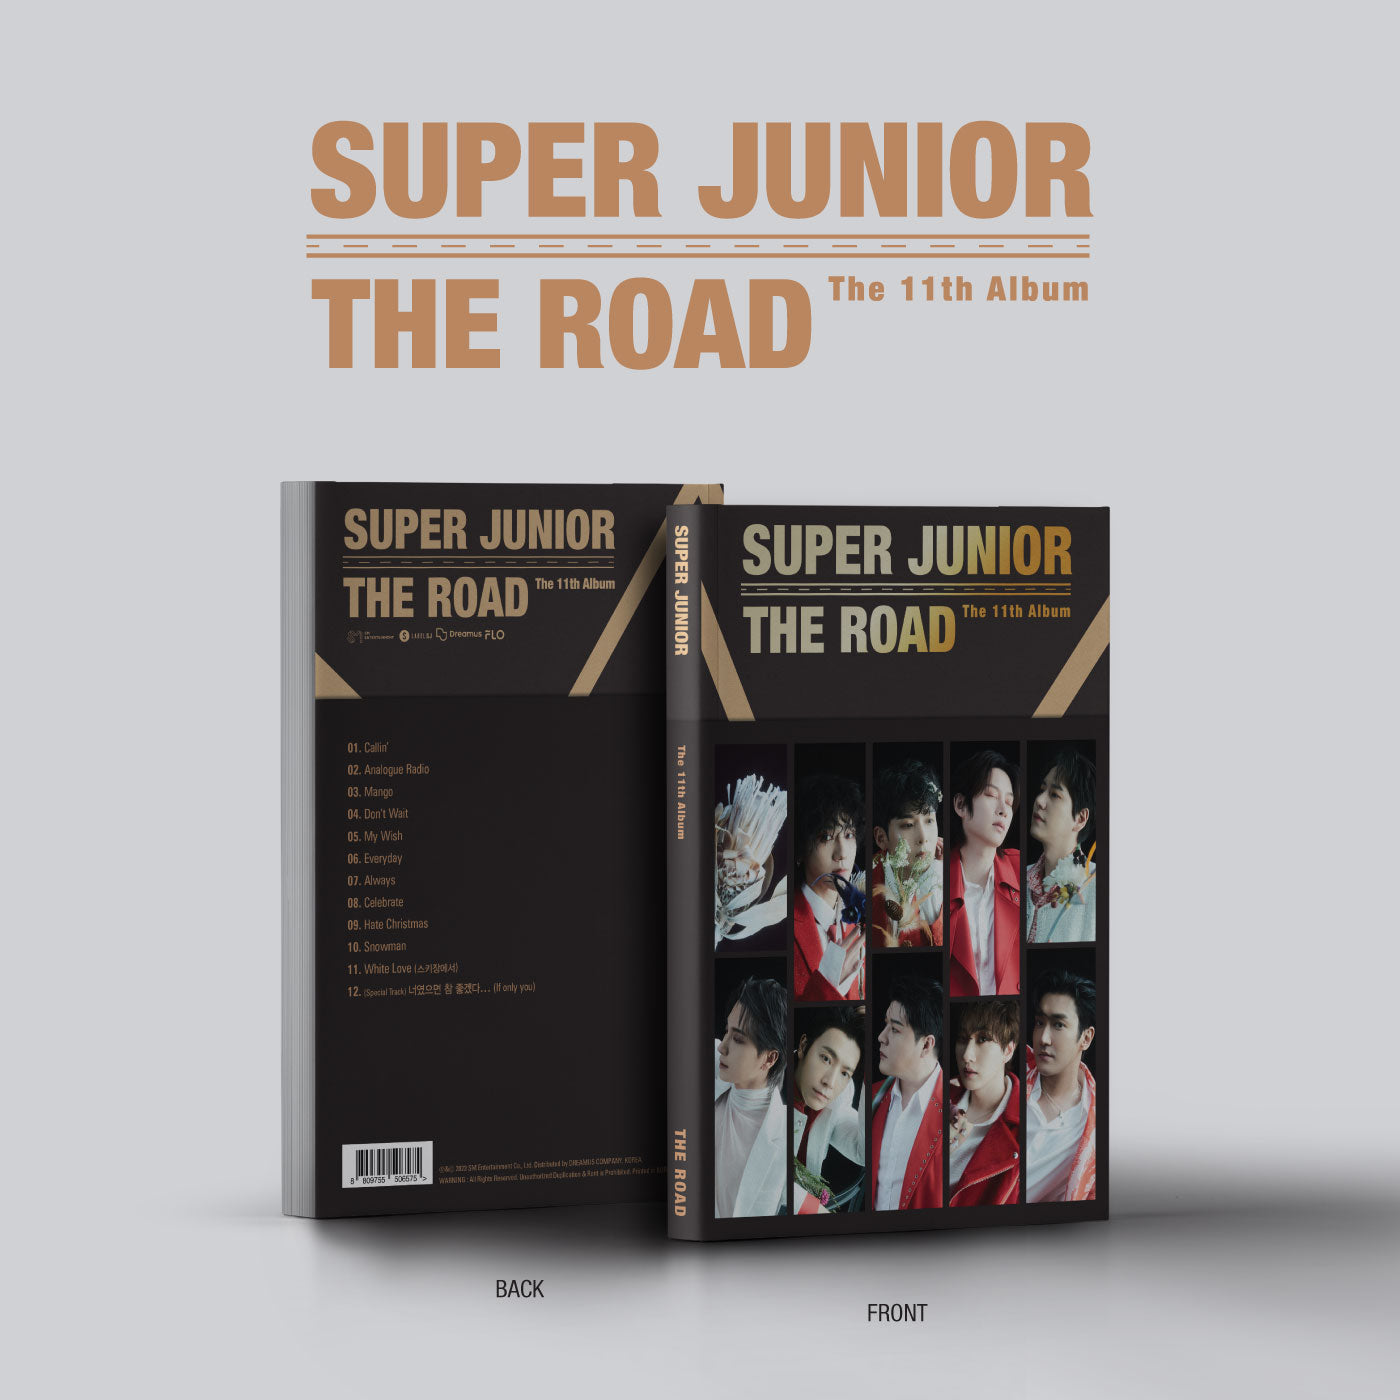 SUPER JUNIOR 11TH ALBUM 'THE ROAD' COVER